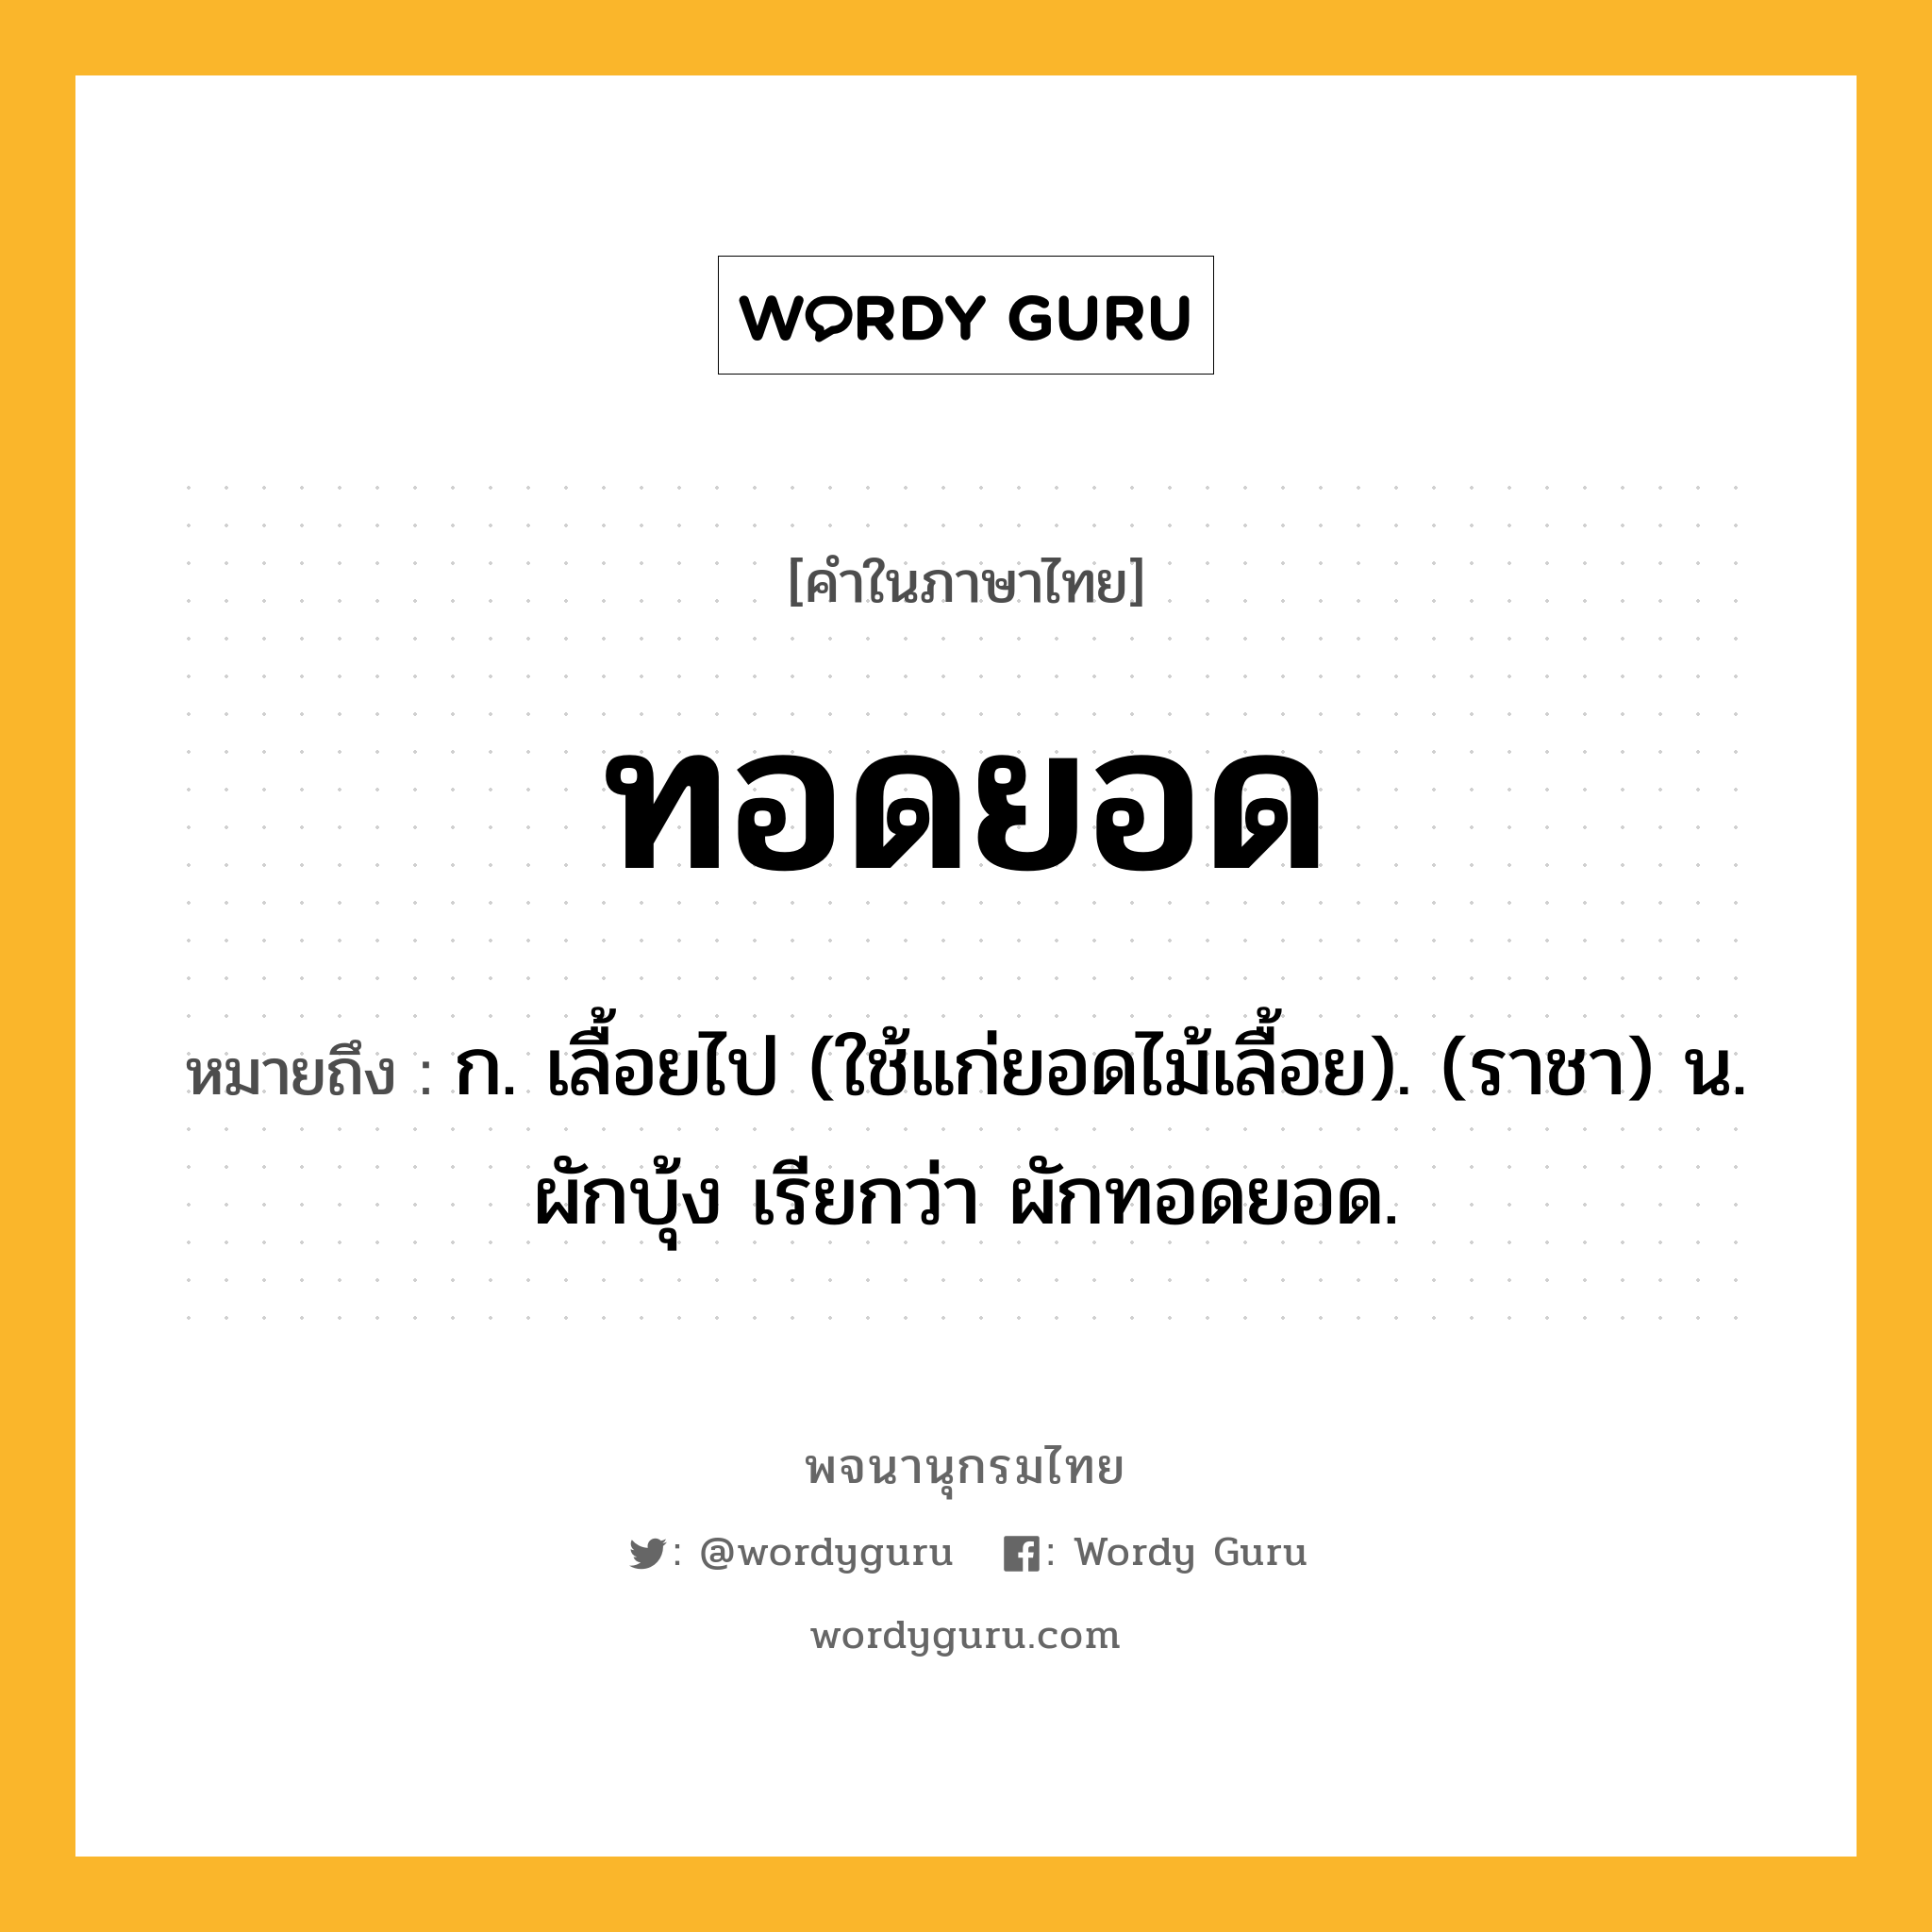 ทอดยอด ความหมาย หมายถึงอะไร?, คำในภาษาไทย ทอดยอด หมายถึง ก. เลื้อยไป (ใช้แก่ยอดไม้เลื้อย). (ราชา) น. ผักบุ้ง เรียกว่า ผักทอดยอด.